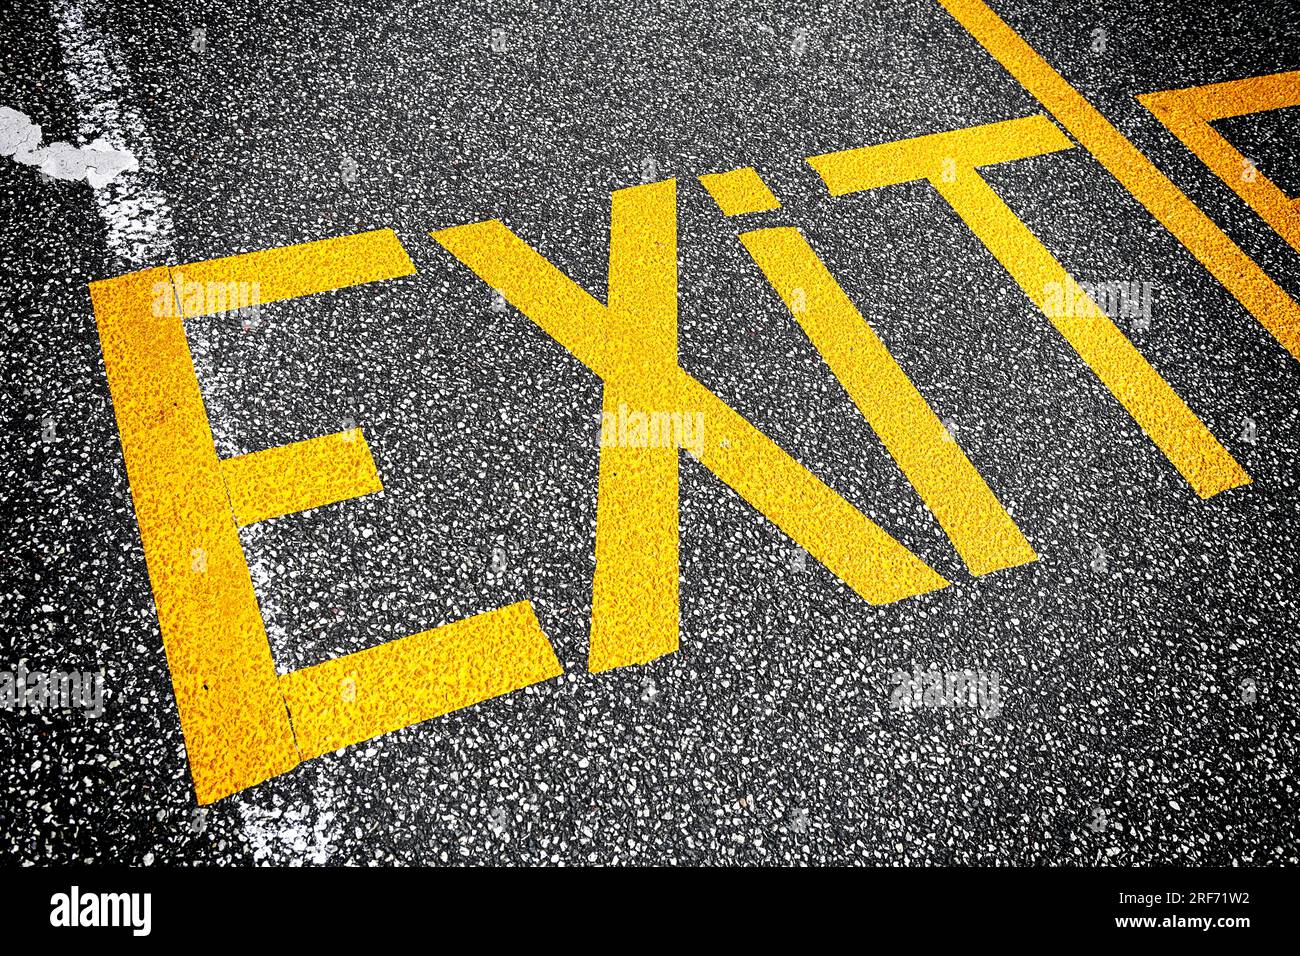 Das Wort Exit ist auf dem Ashalt geschrieben Foto Stock